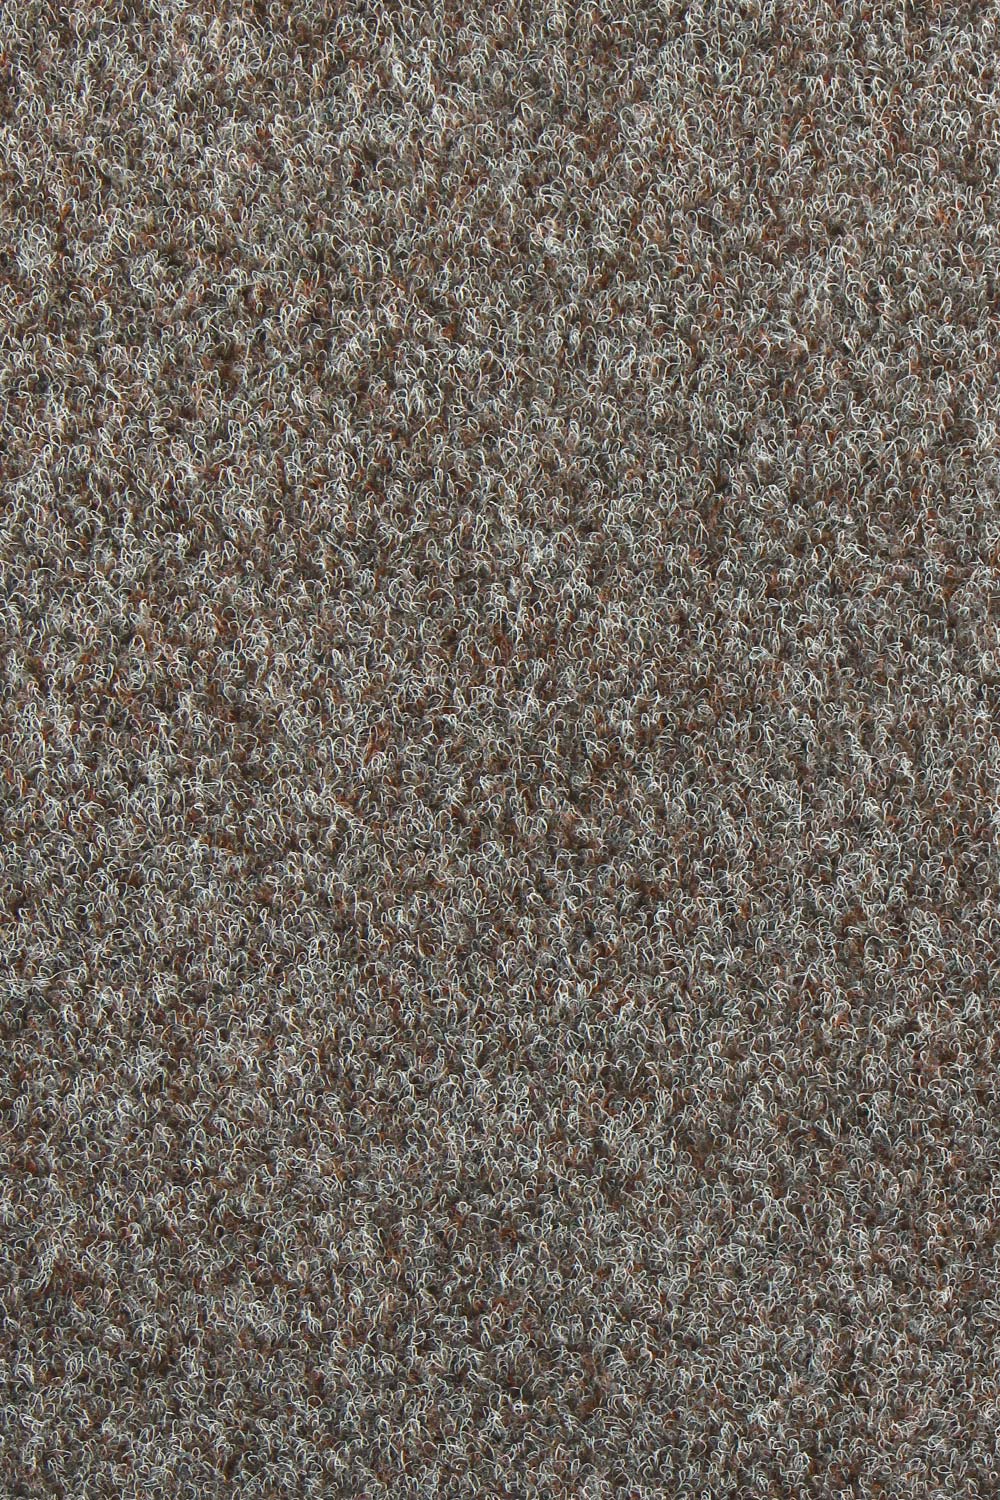 Zátežový koberec New Orleans 760 + 400 cm